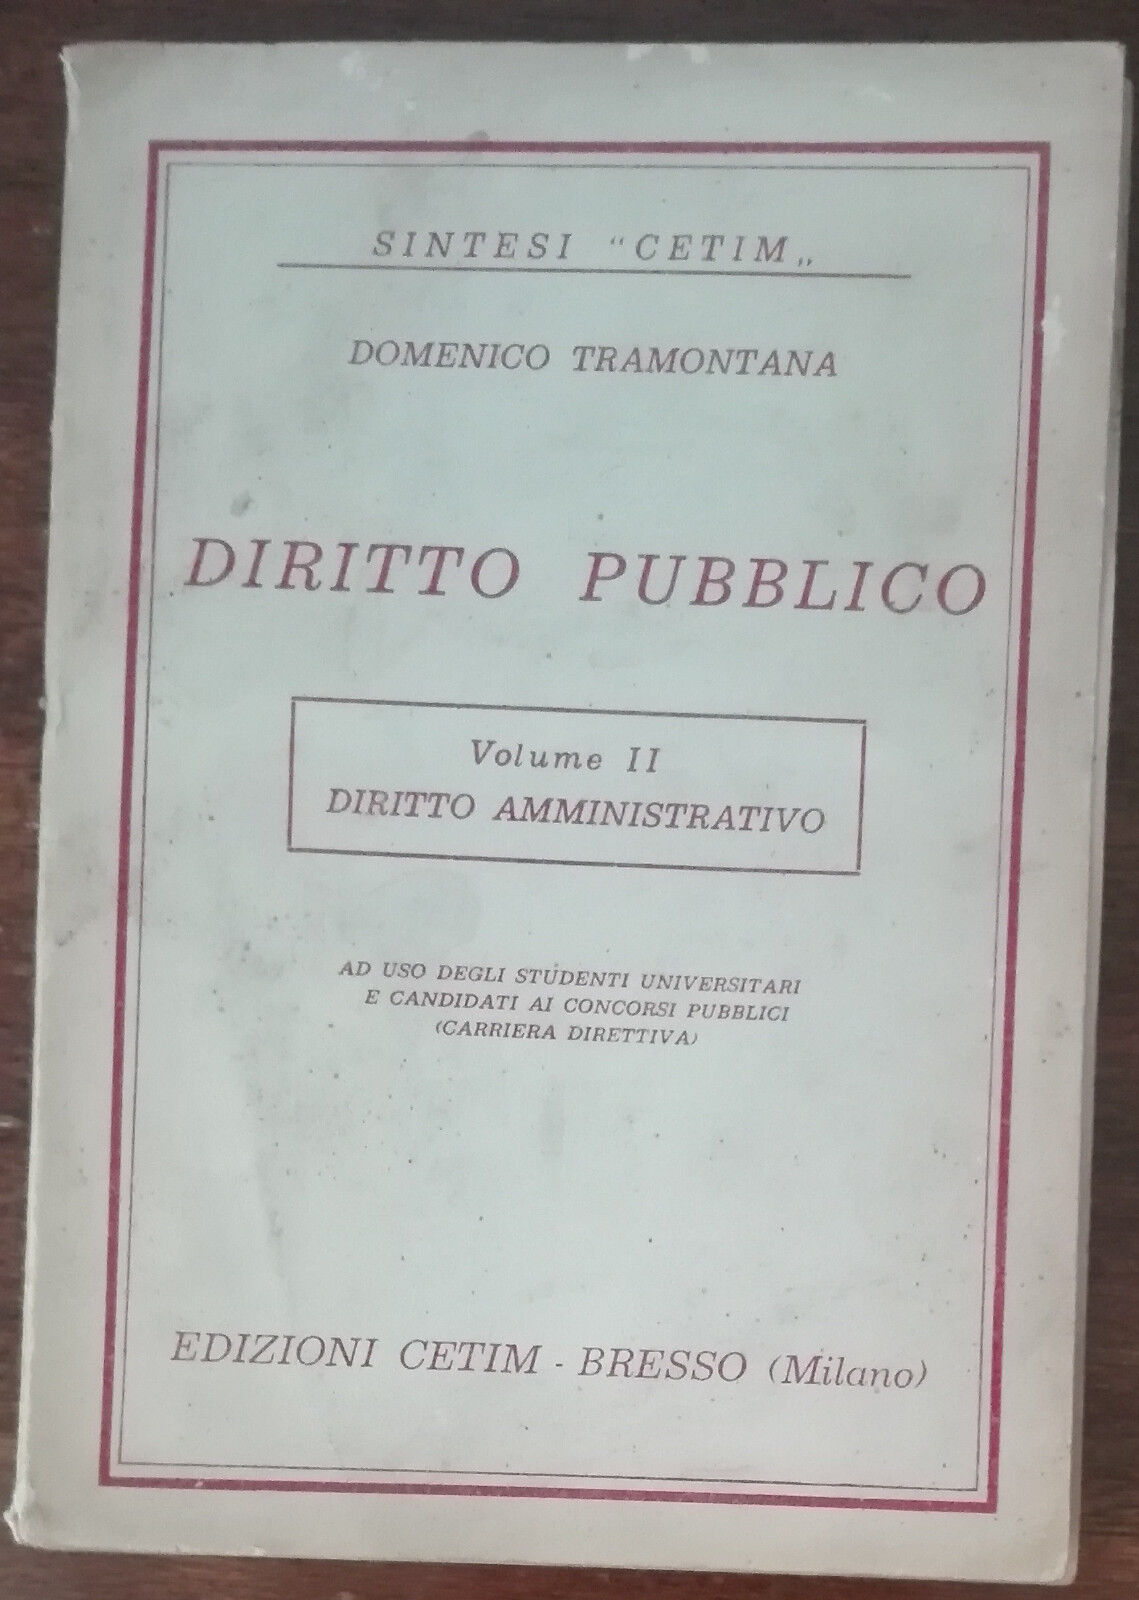 Diritto Pubblico - Domenico Tramontana - Cetim,1963 - A